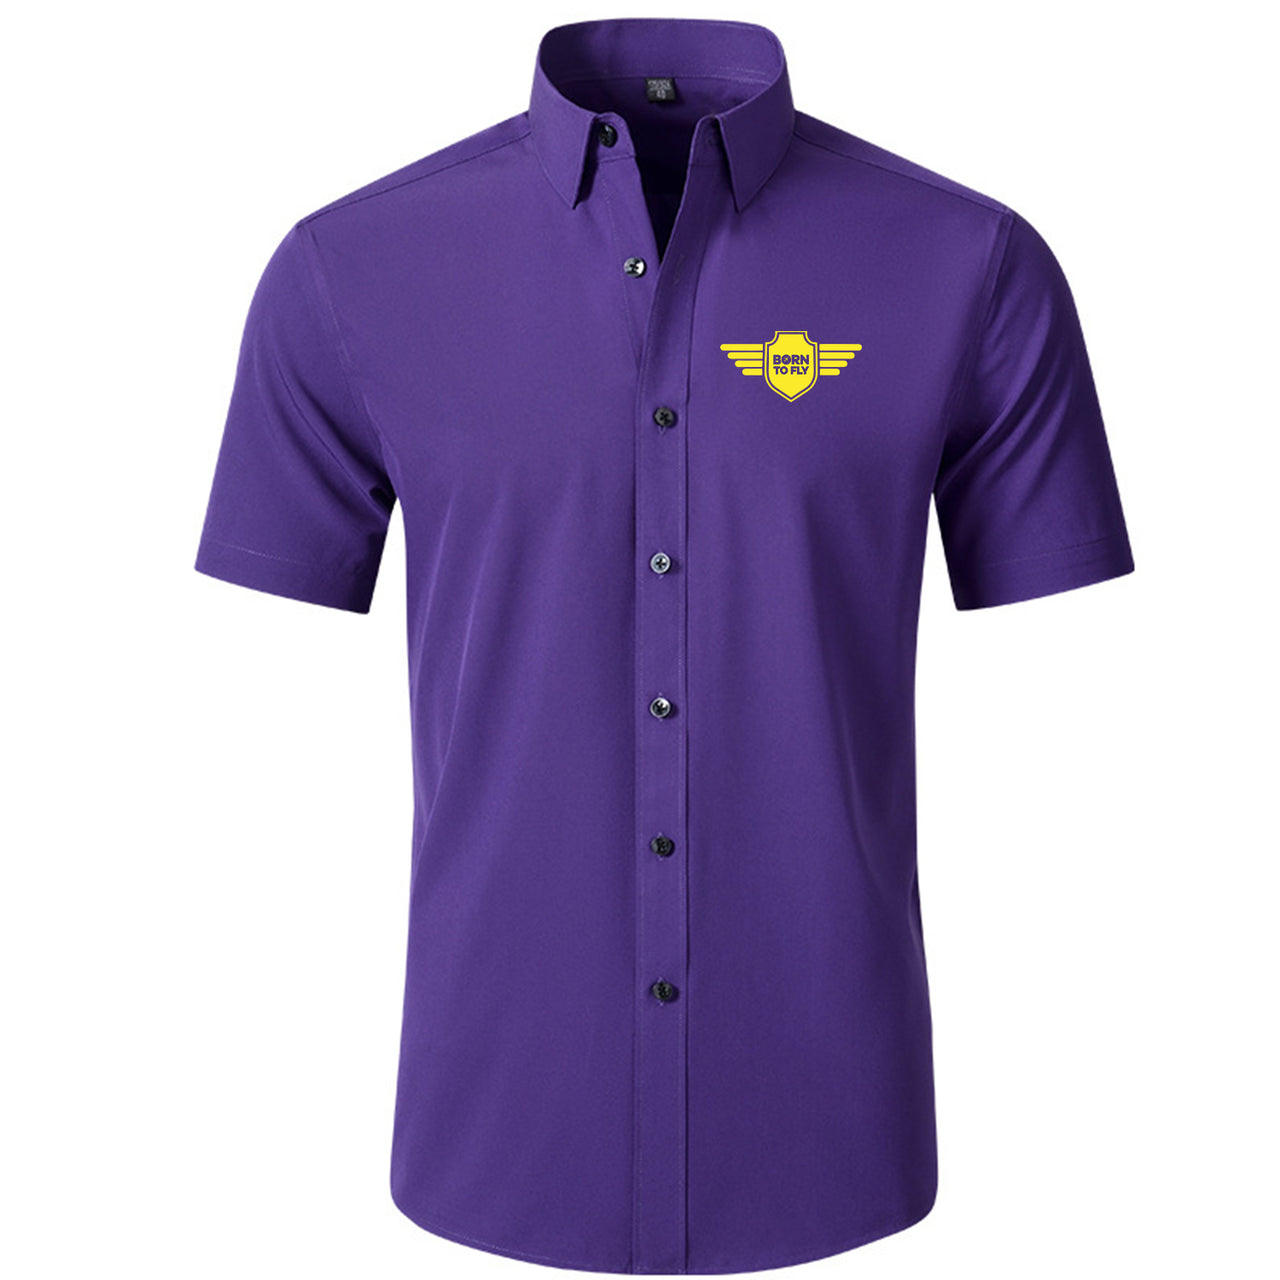 Born To Fly & Badge Designed Short Sleeve Shirts